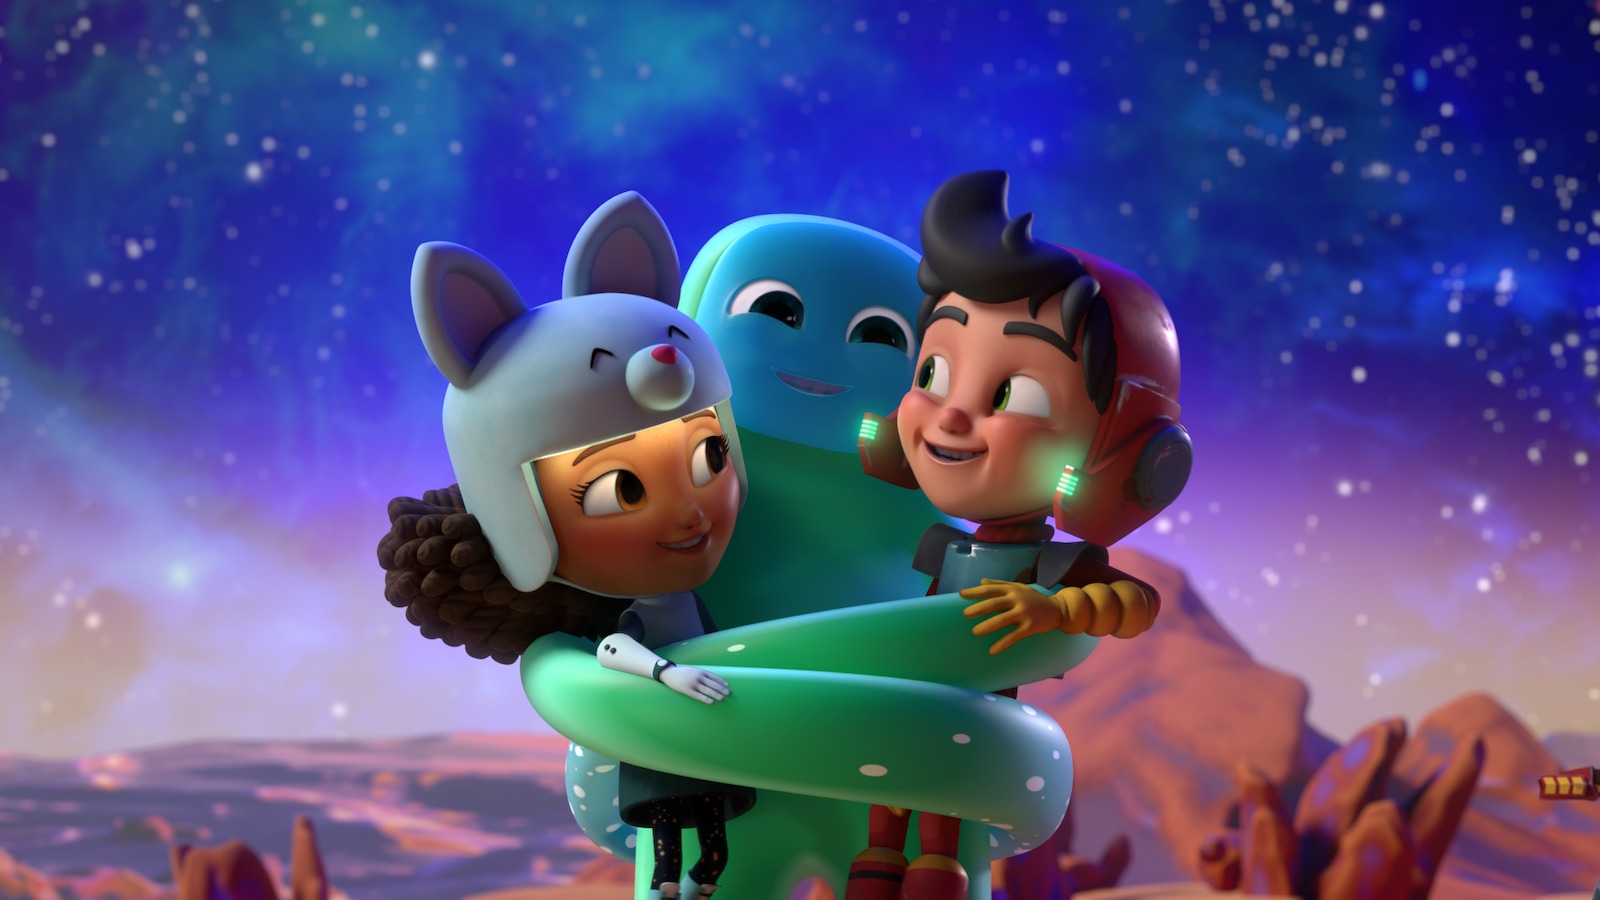 L'extraterrestre serre les deux enfants dans ses bras. Ils sont heureux.